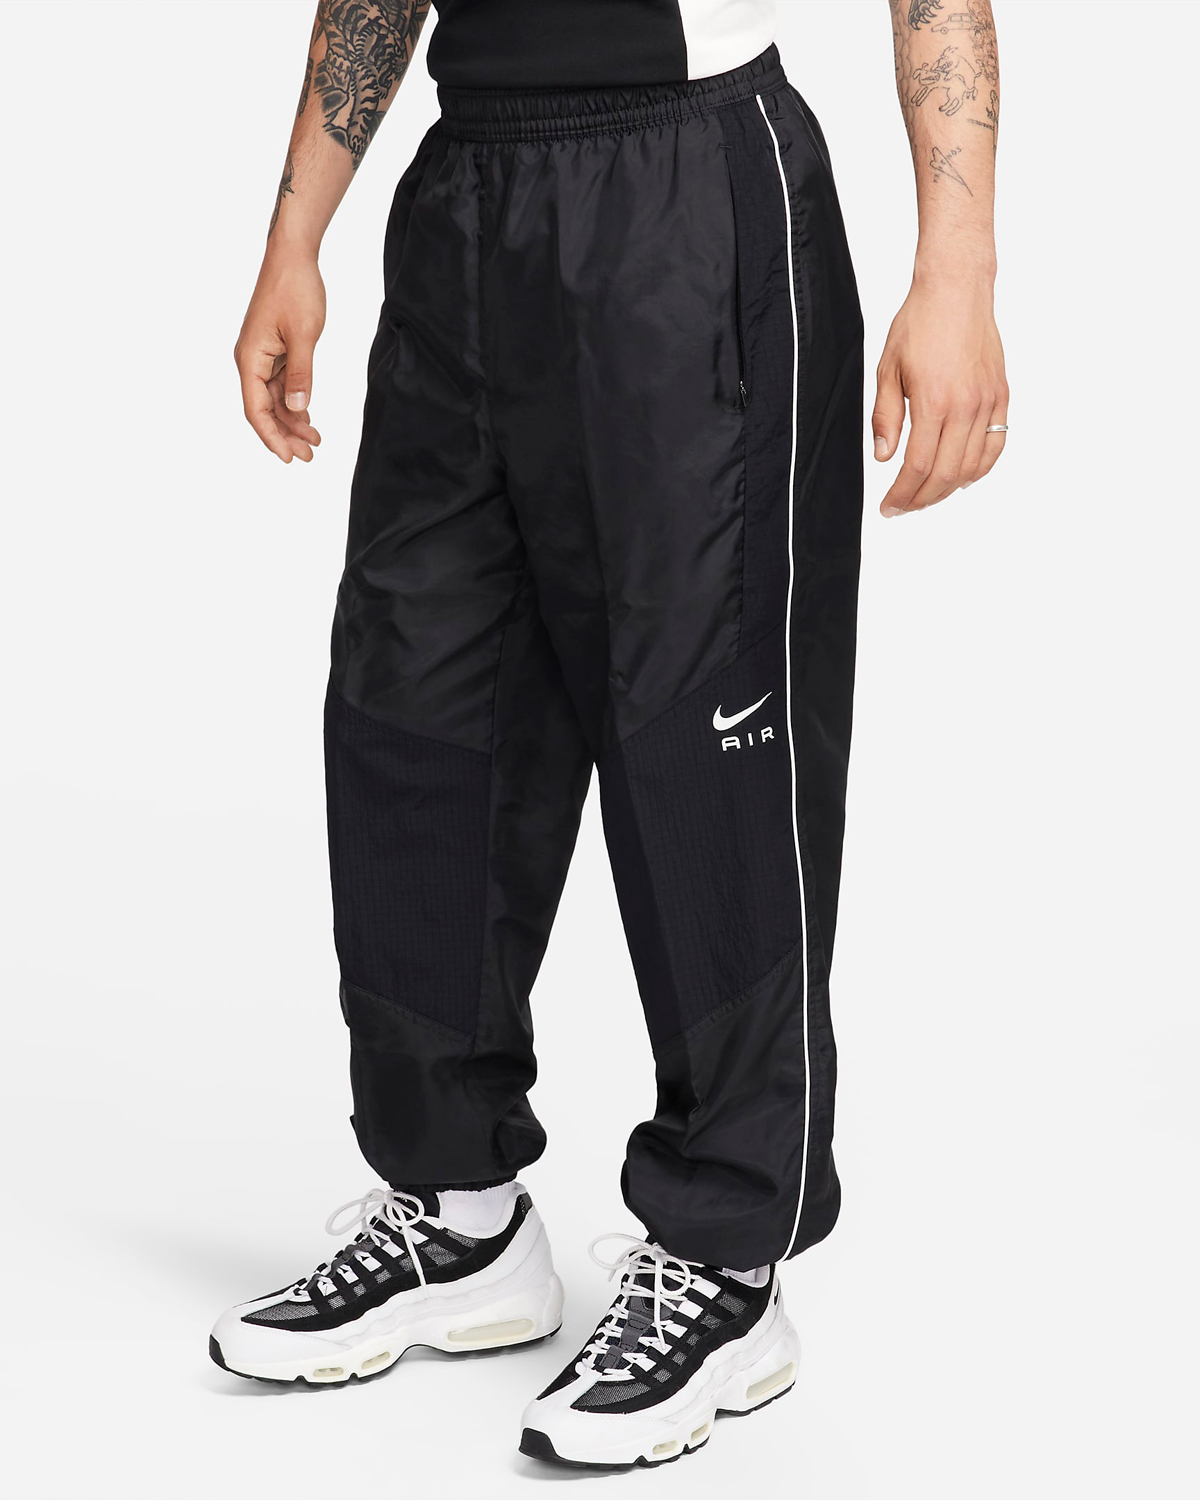 Nike-Air-Woven-Pants-Black-White